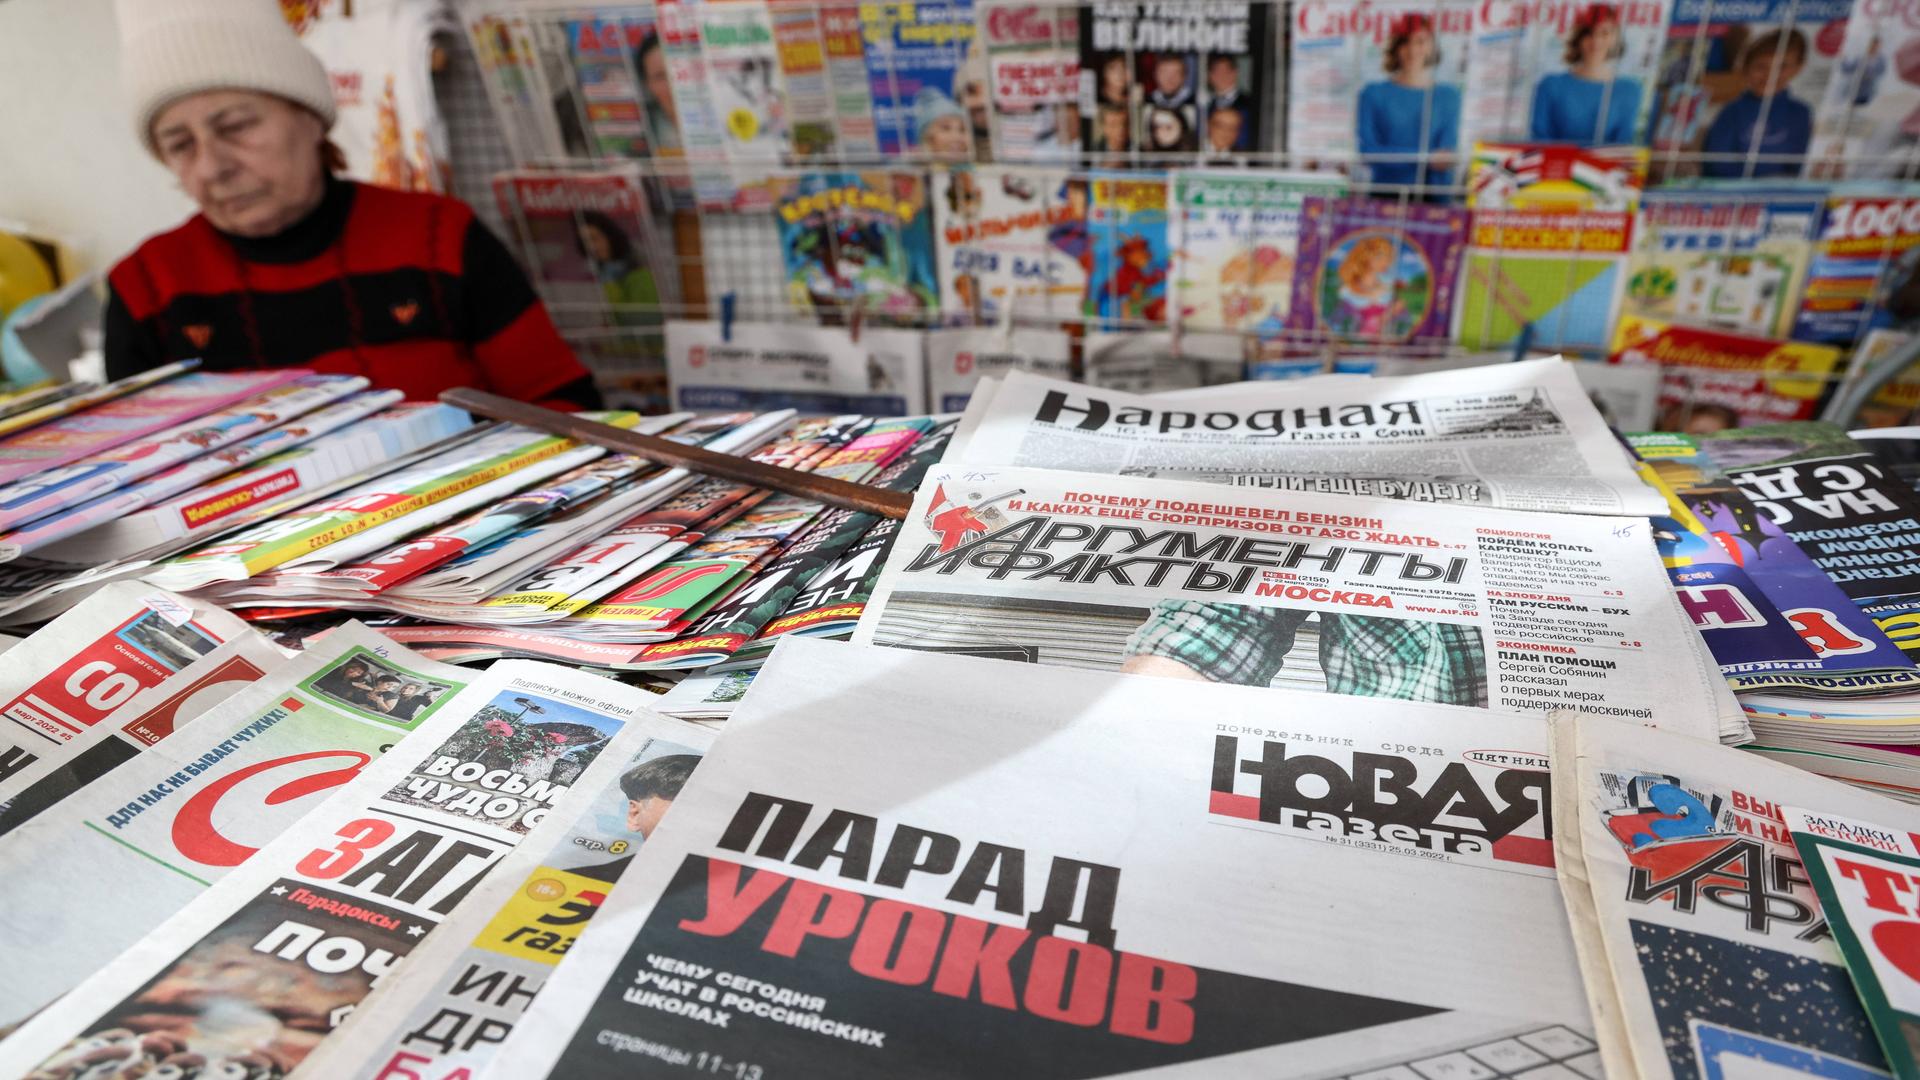 Zeitungskiosk im russischen Sotschi vor Beginn des russischen Angriffskriegs auf die Ukraine, als es die russische Zeitung Nowaja Gazeta noch gab.